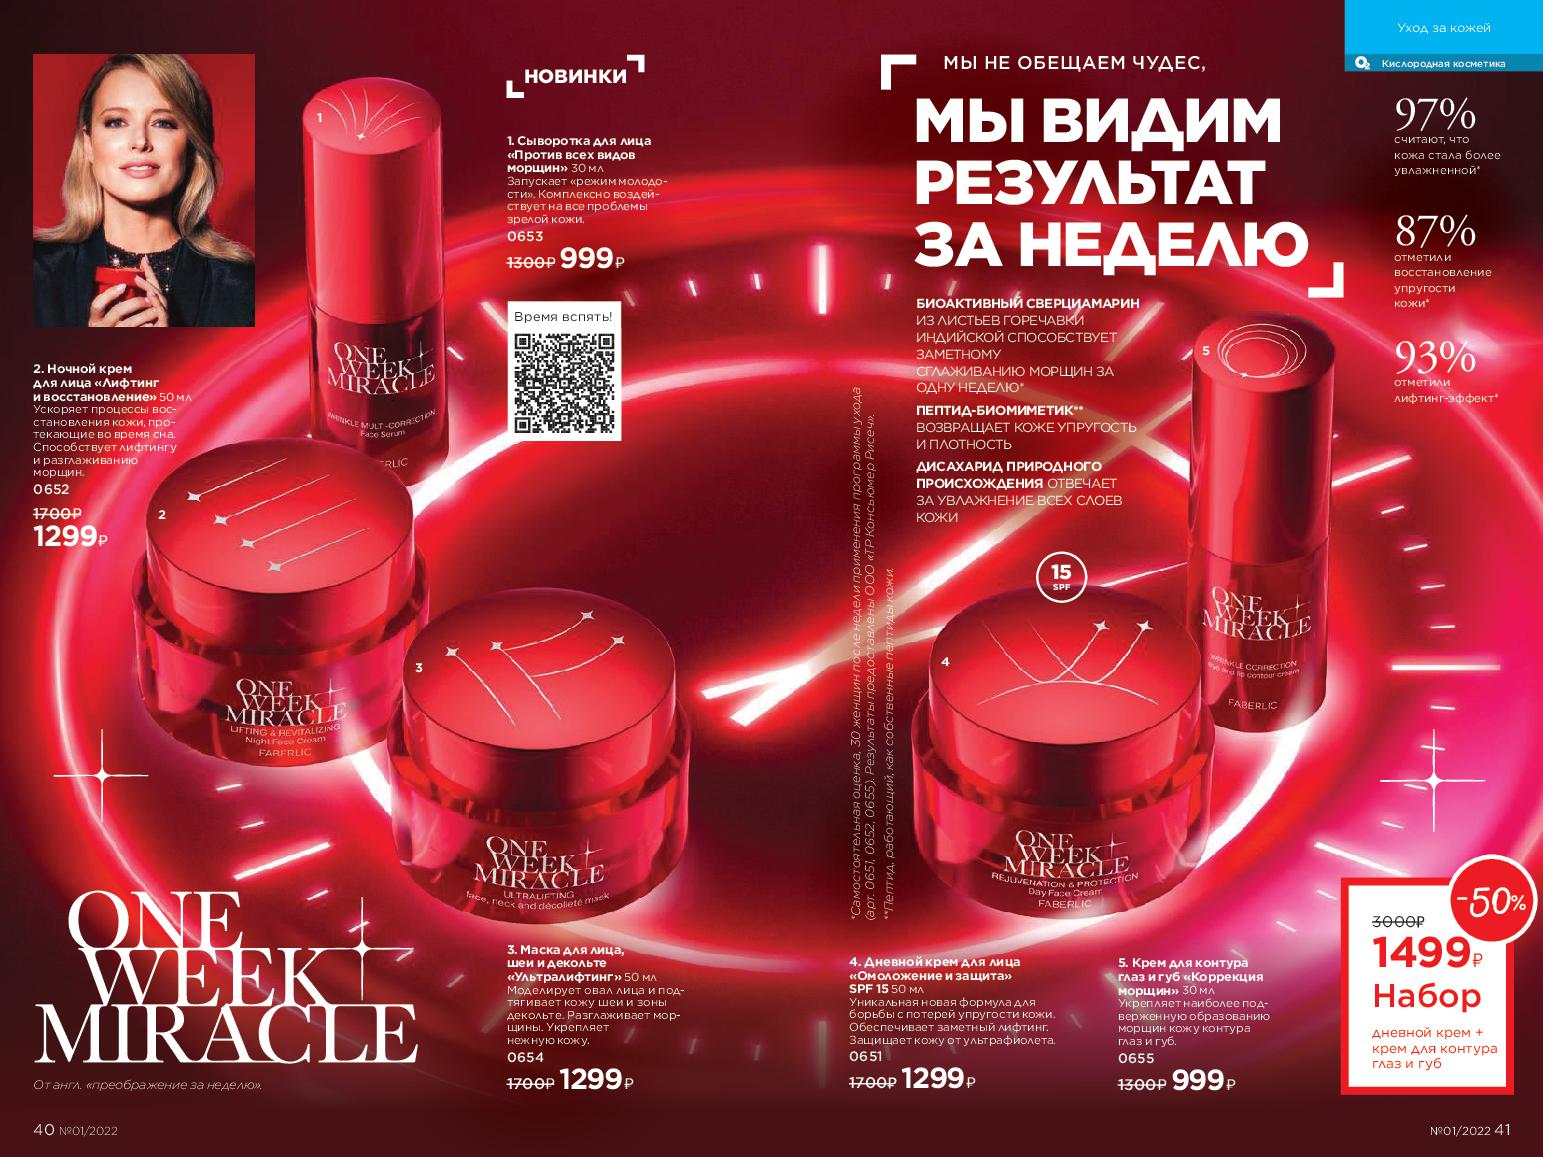 Действующий каталог продукции Фаберлик | Faberlic Россия 2022